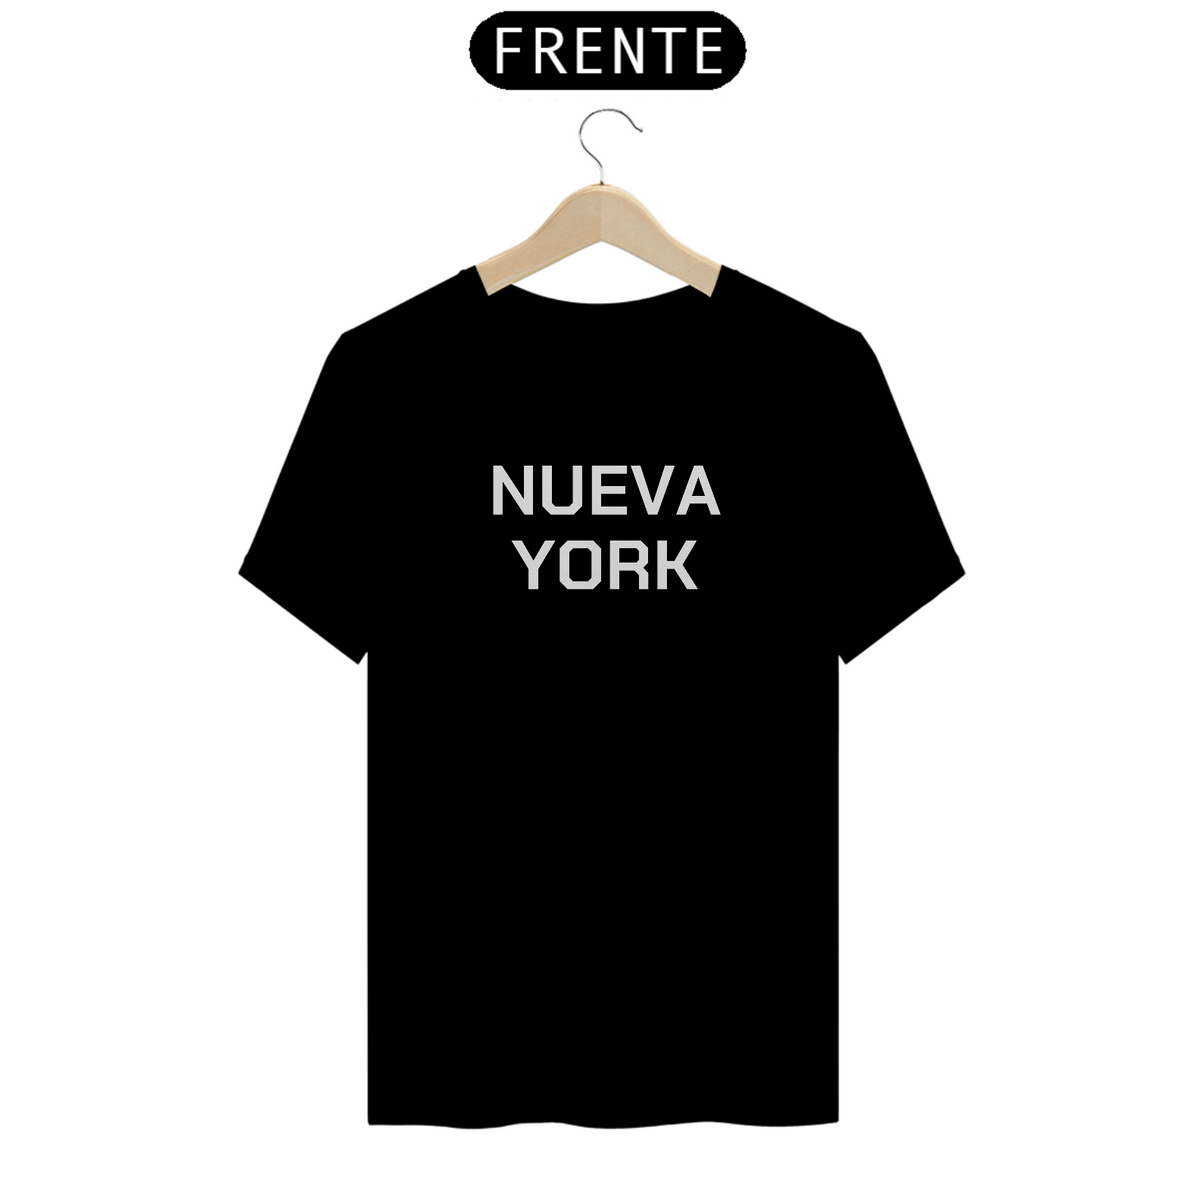 Nome do produto: Camiseta Nueva York